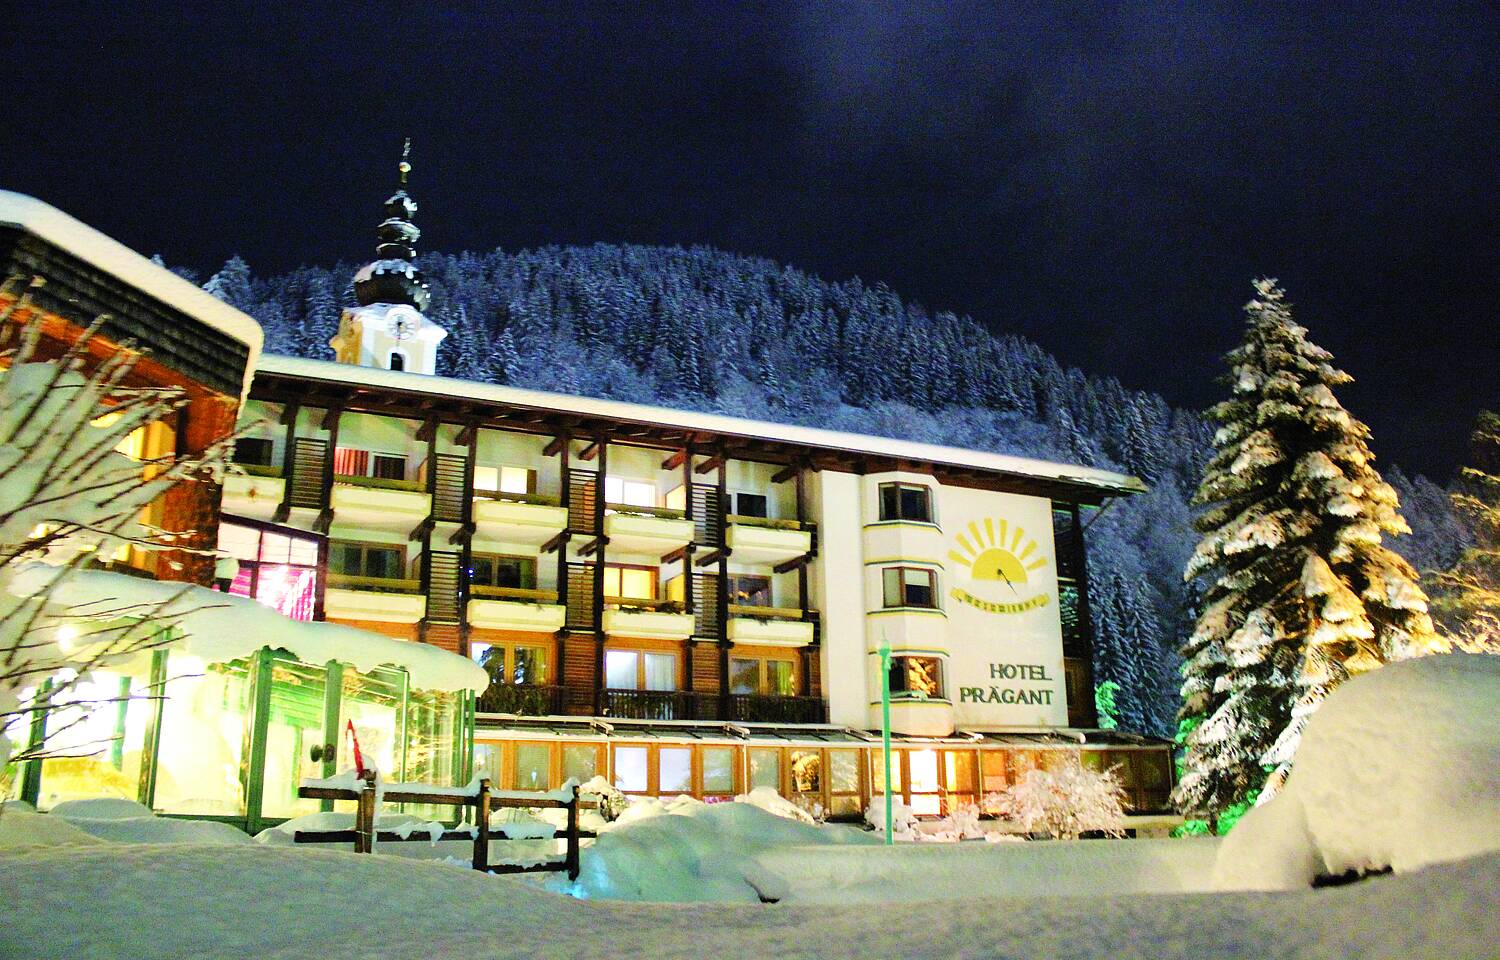 Hotel Praegant BKK Nacht Winter